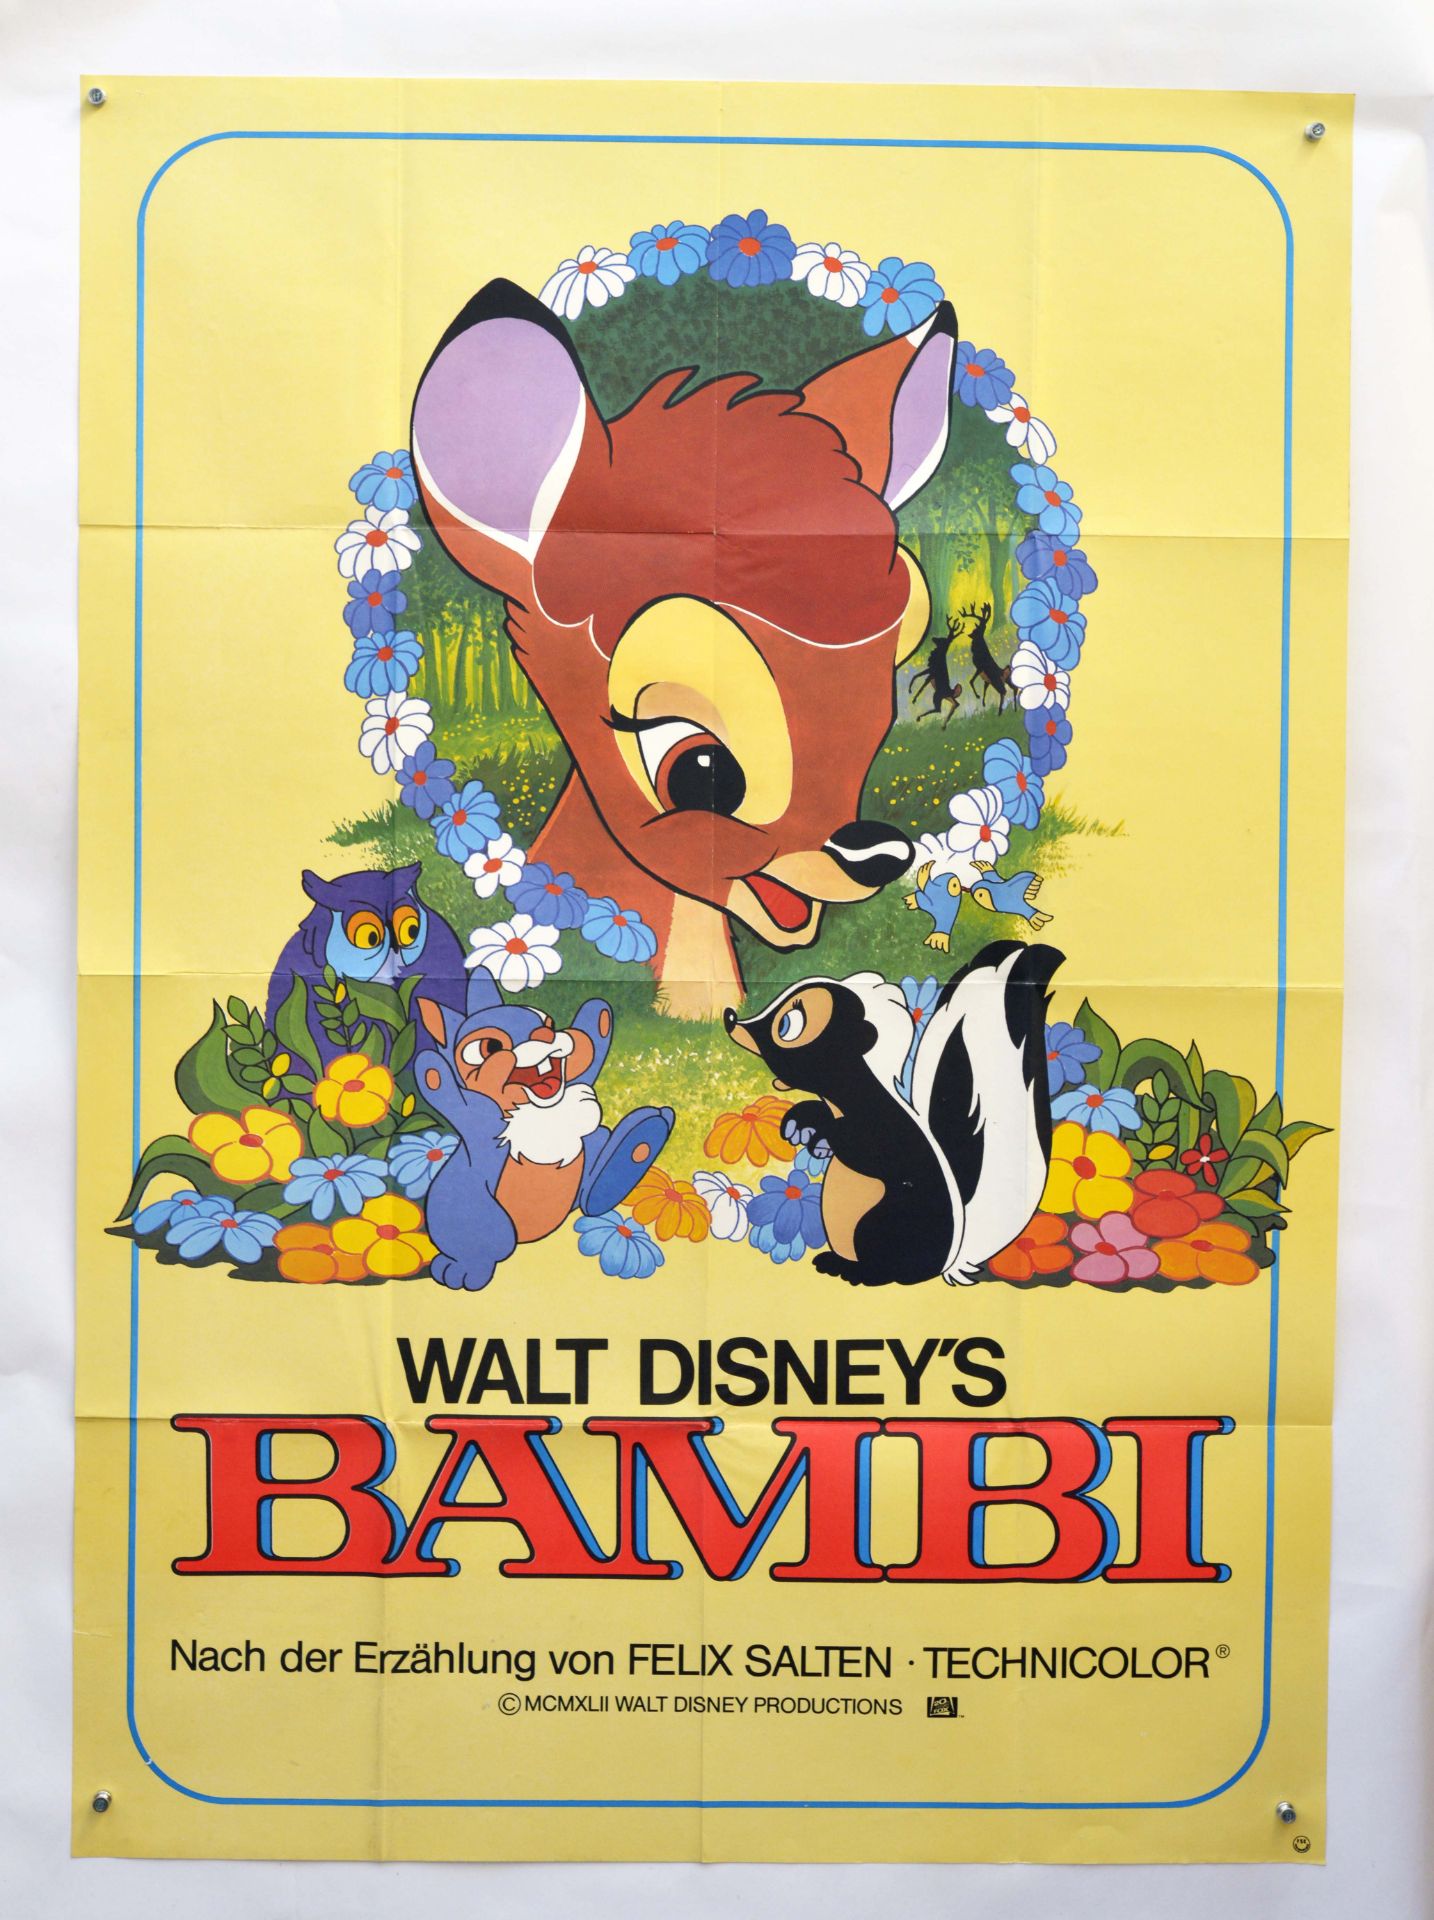 Film Poster "Bambi", folds, min. pinholes